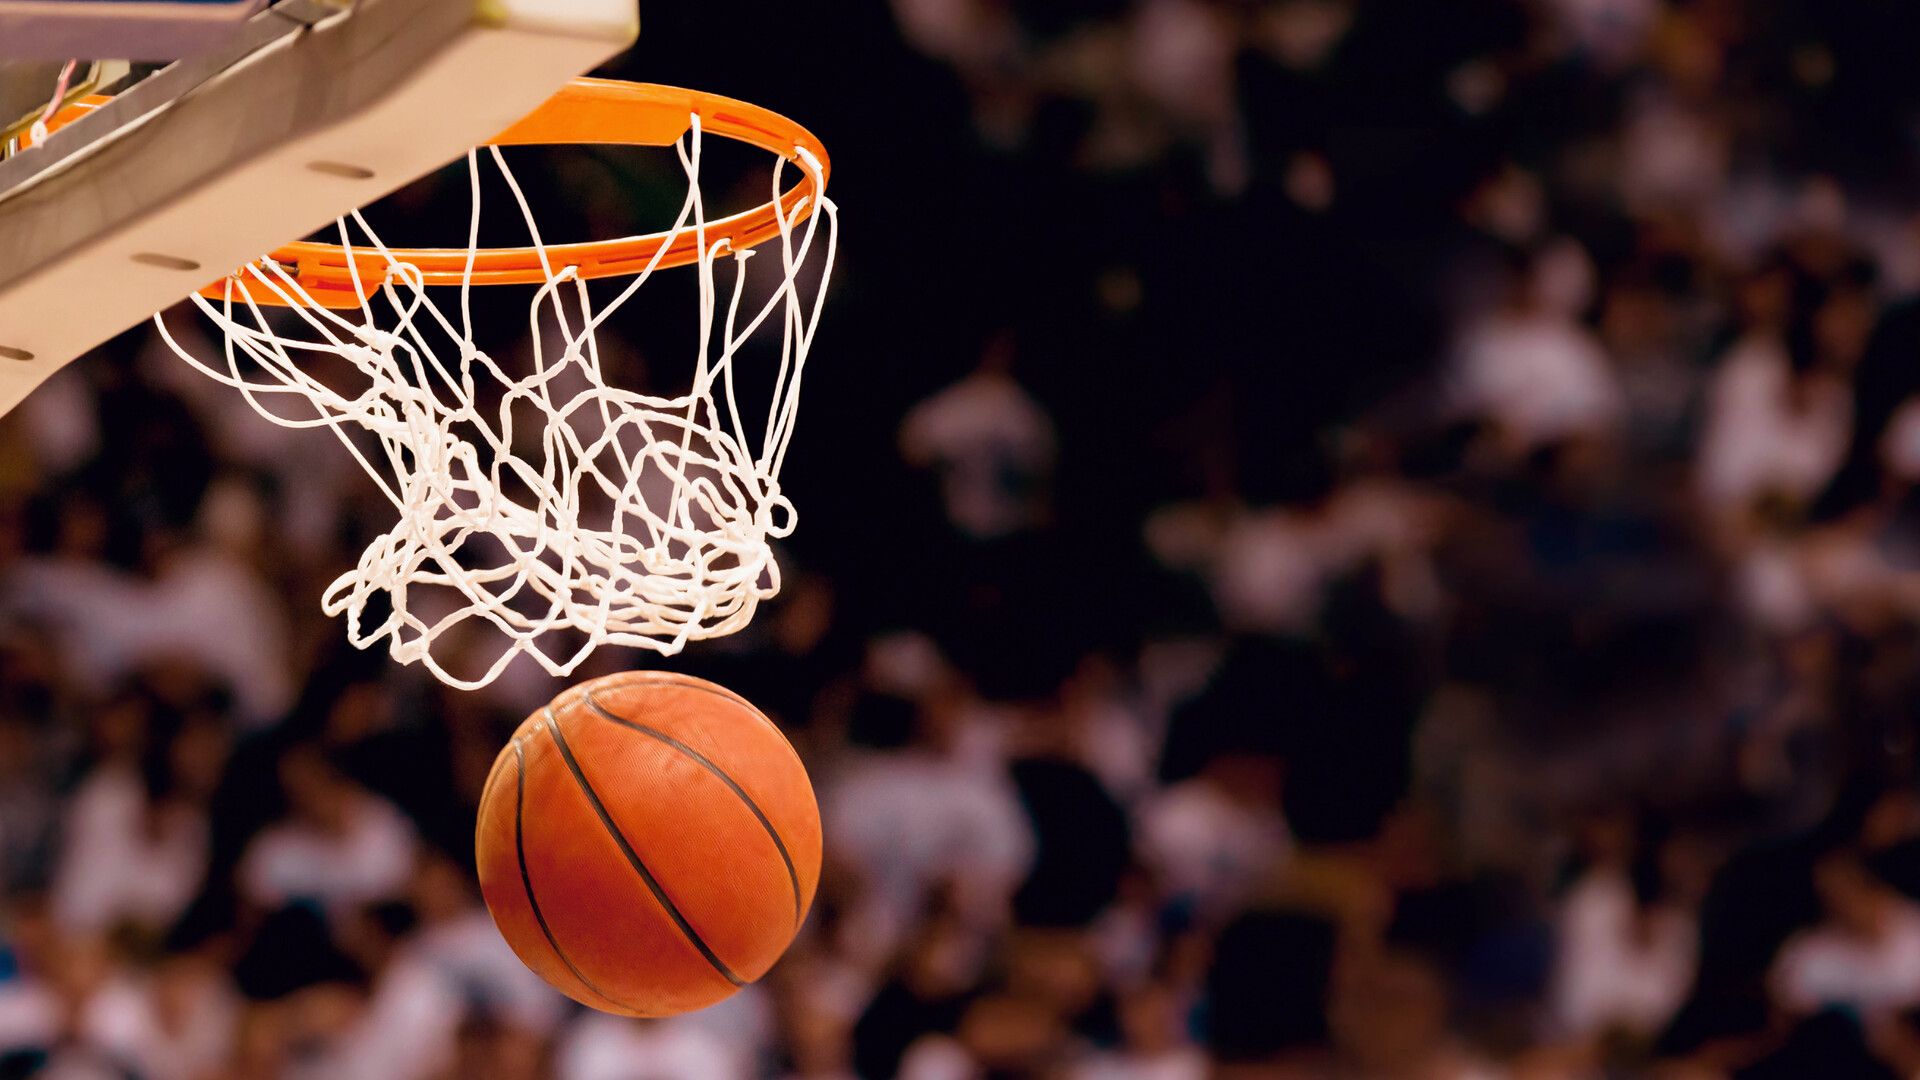 Basketball hoop and a ball